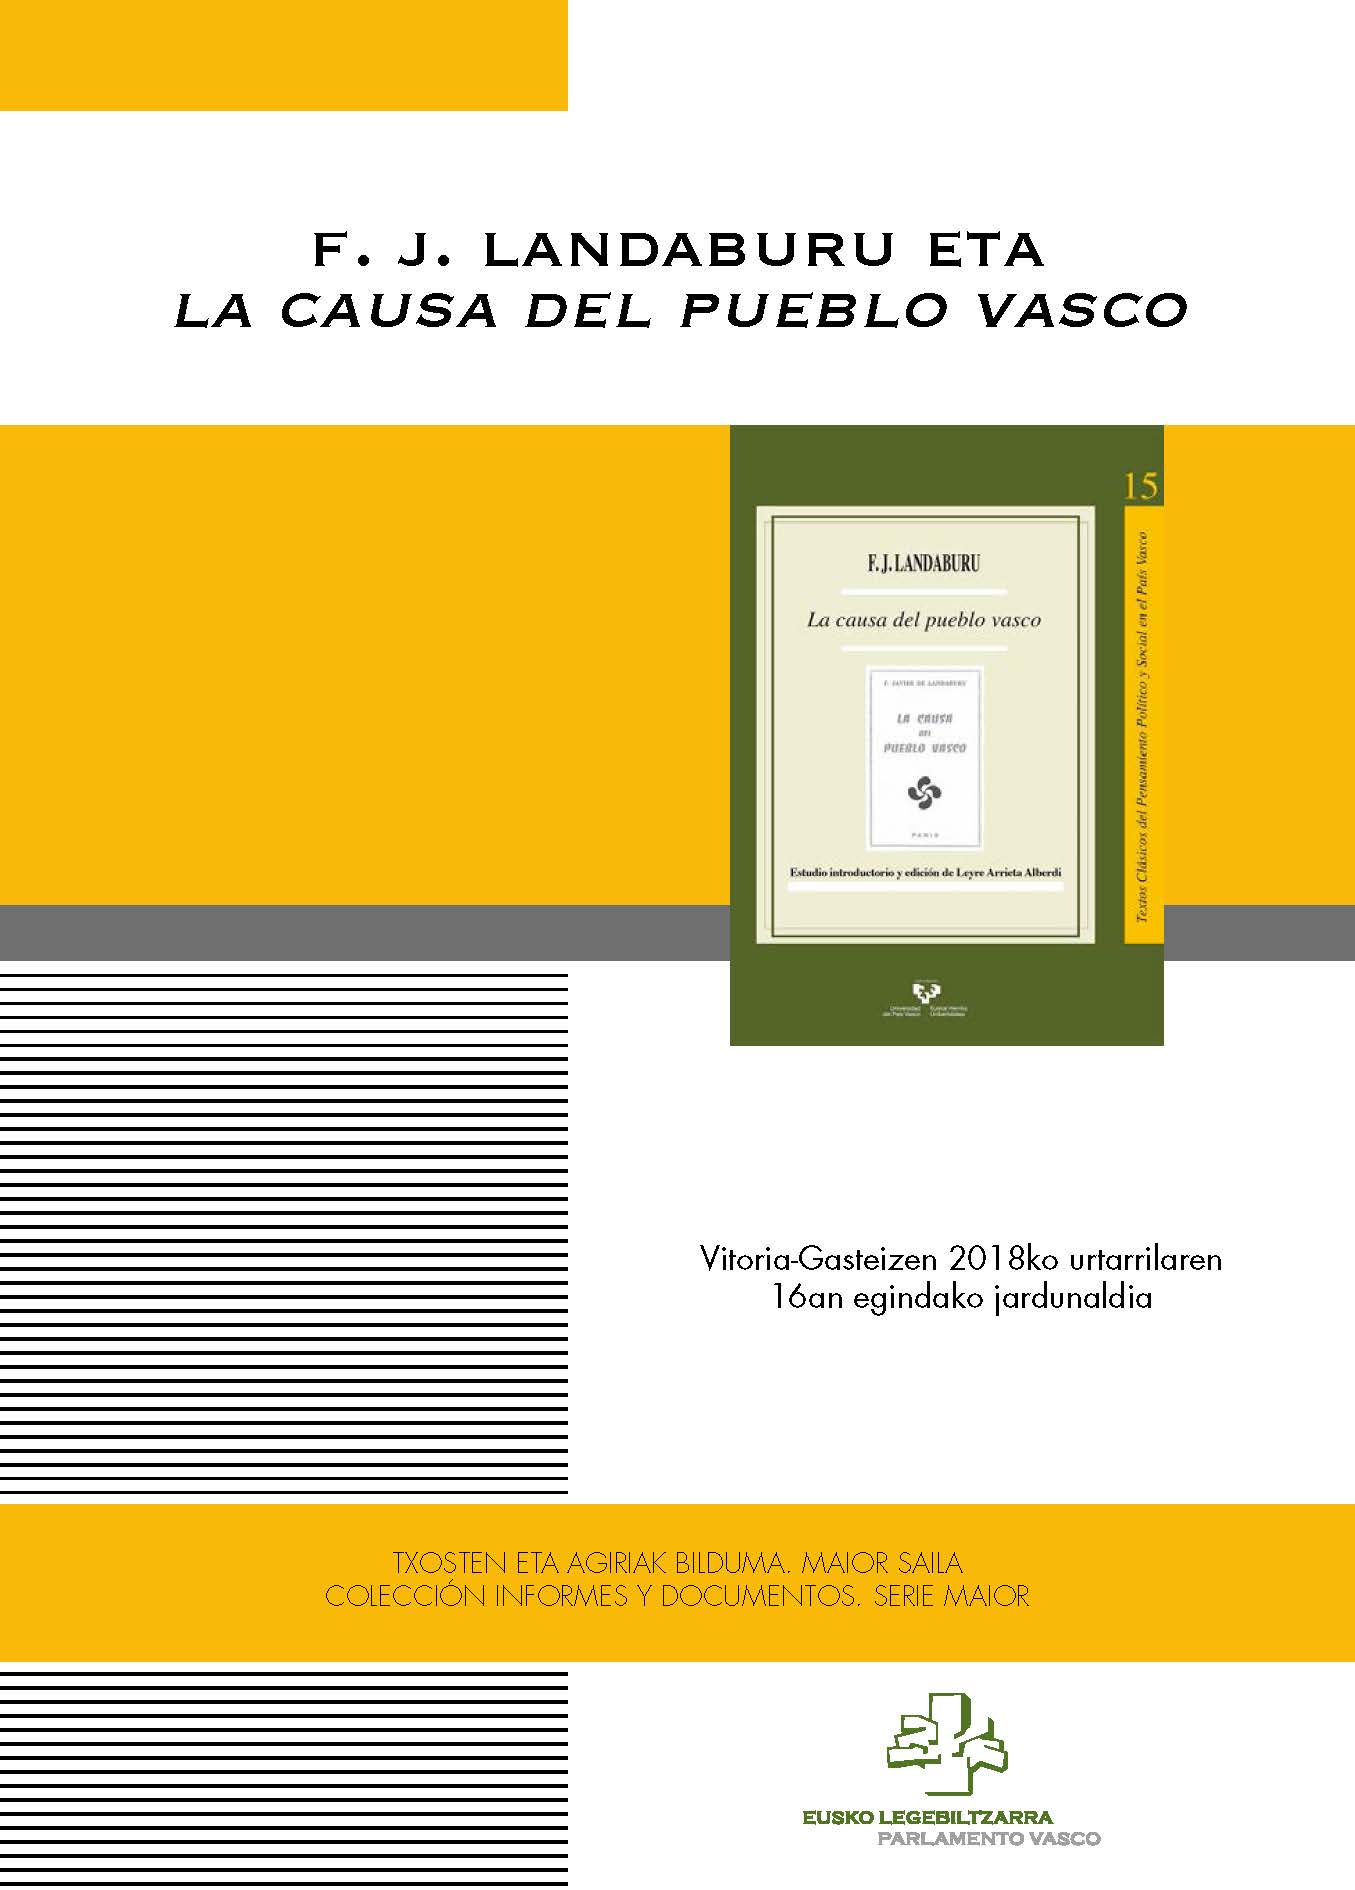 Imagen de portada del libro F.J. Landaburu y “La causa del pueblo vasco” = F.J. Landaburu eta “La causa del pueblo vasco”